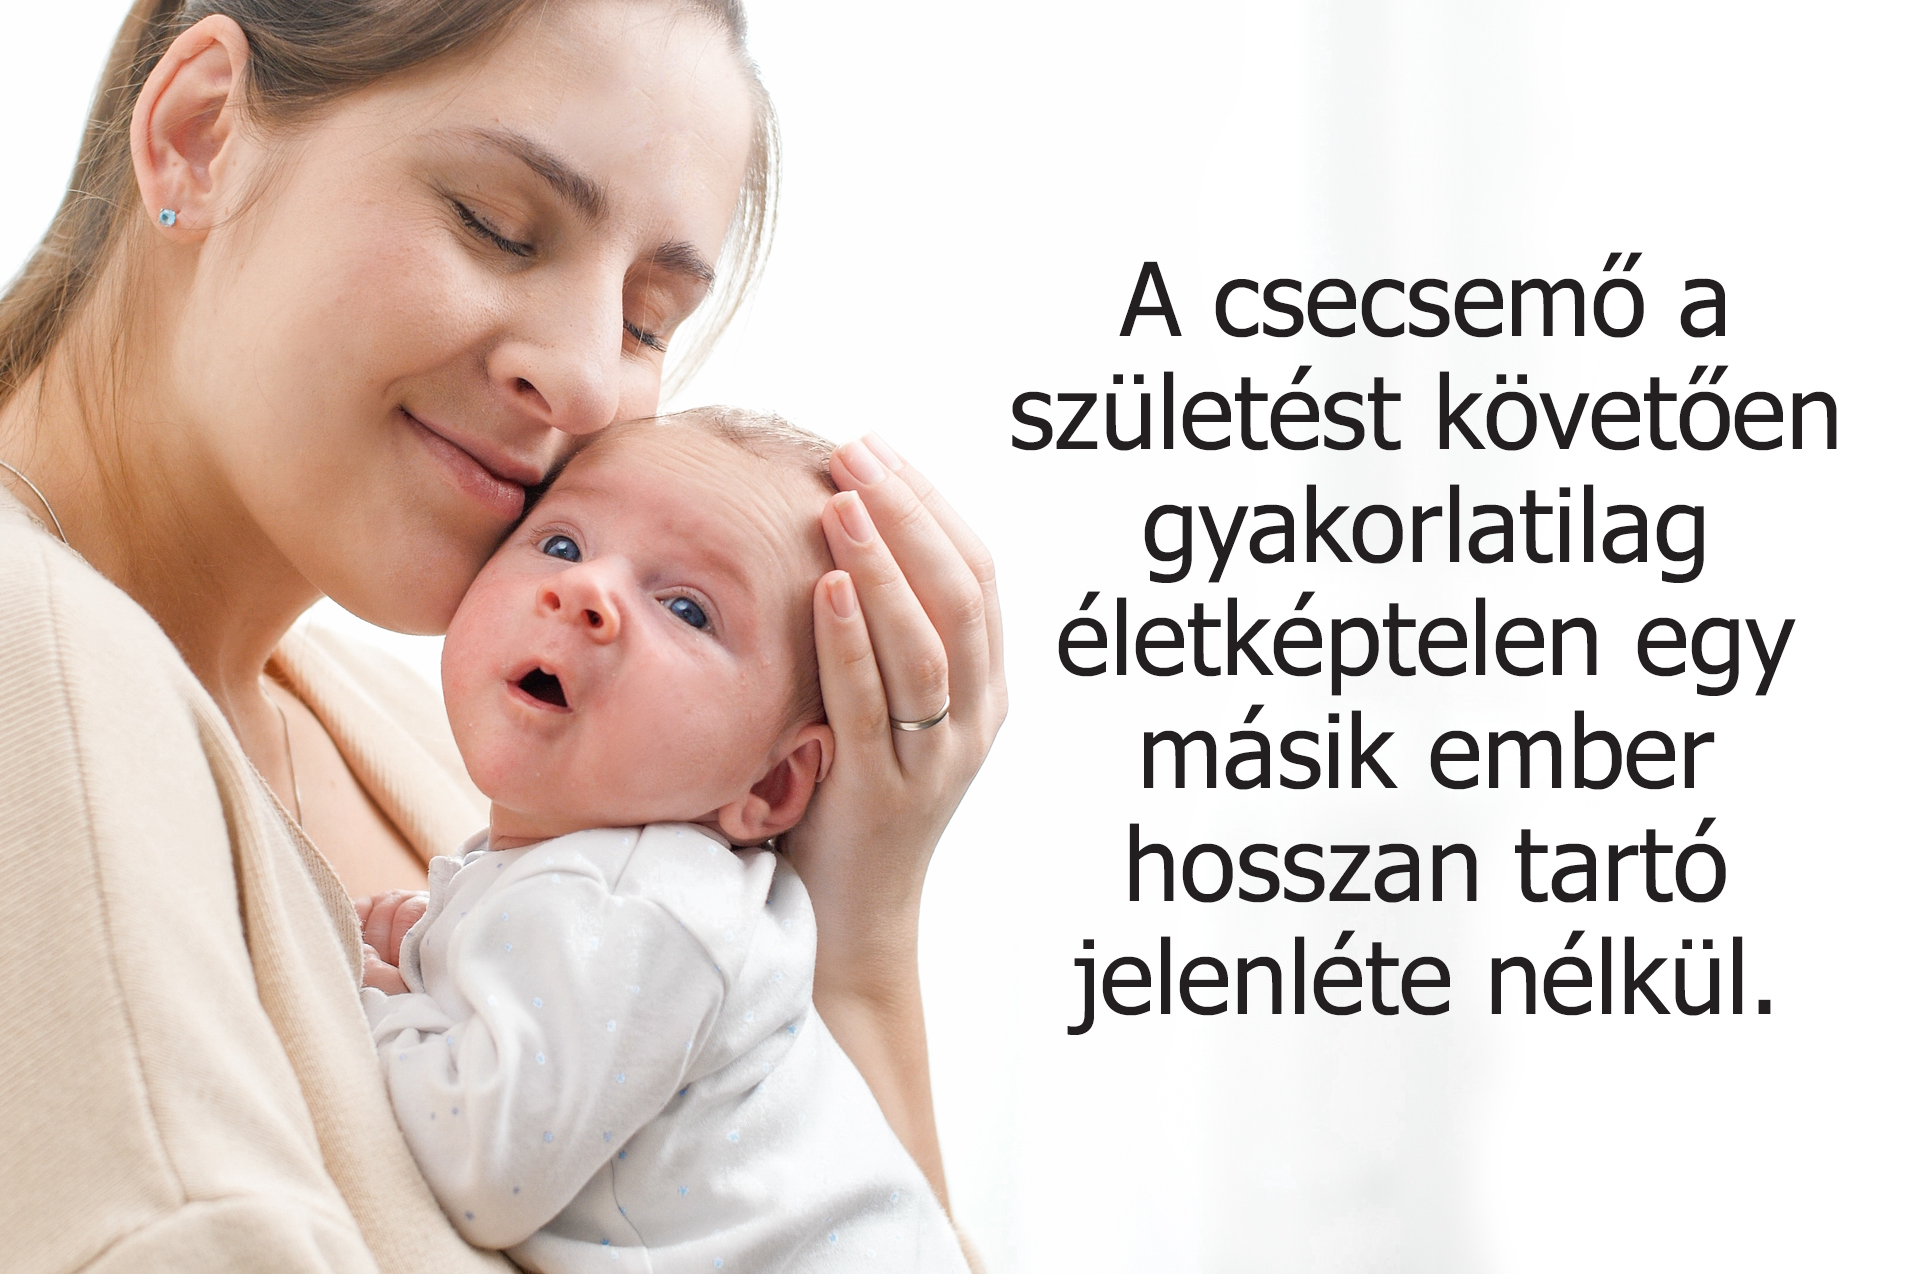 A csecsemő a születést követően gyakorlatilag életképtelen egy másik ember hosszantartó gondoskodása nélkül.